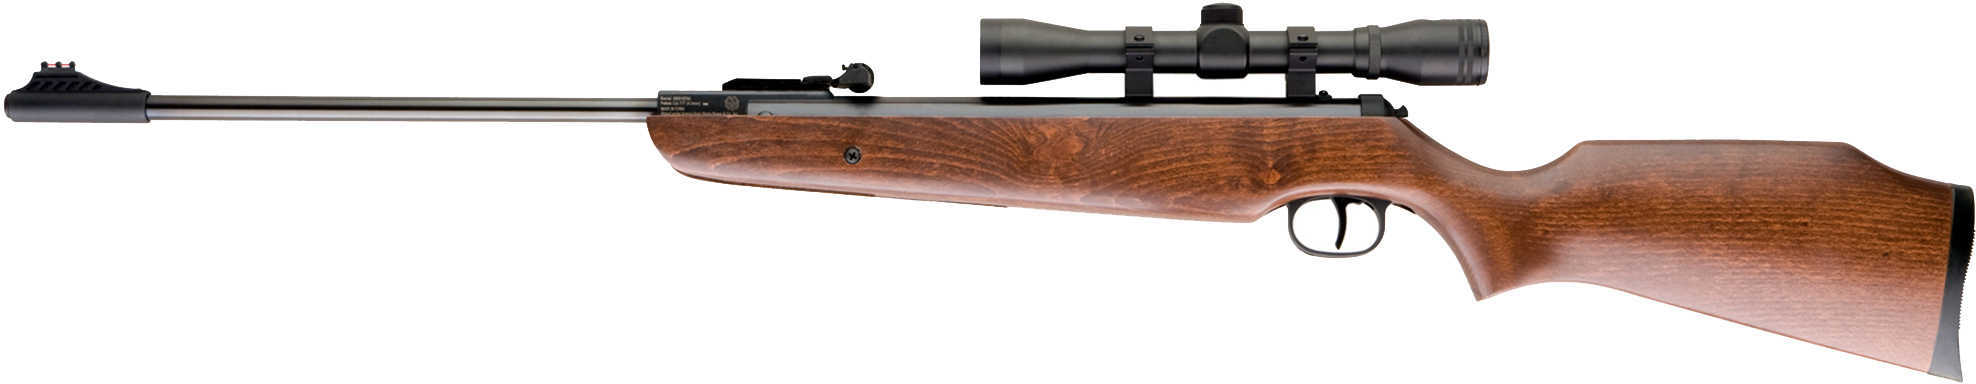 Umarex Air Hawk Air Rifle Combo W 4X32 Scope Airgun Md: 2244001